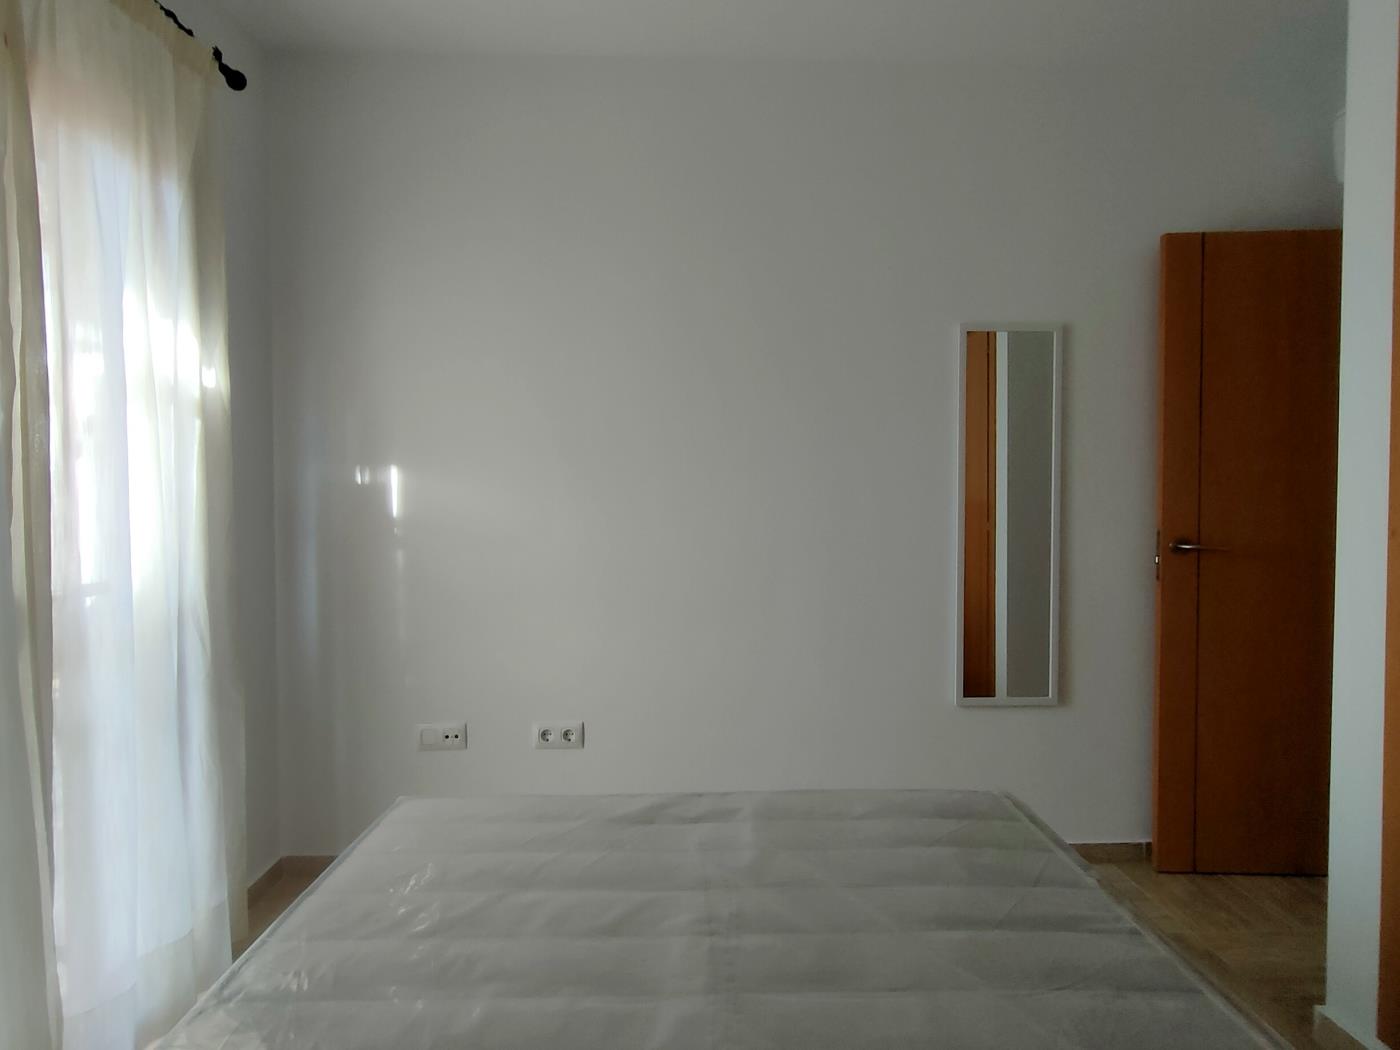 Ref. C4. Apartamento de dos dormitorios en planta primera en Chiclana de la frontera